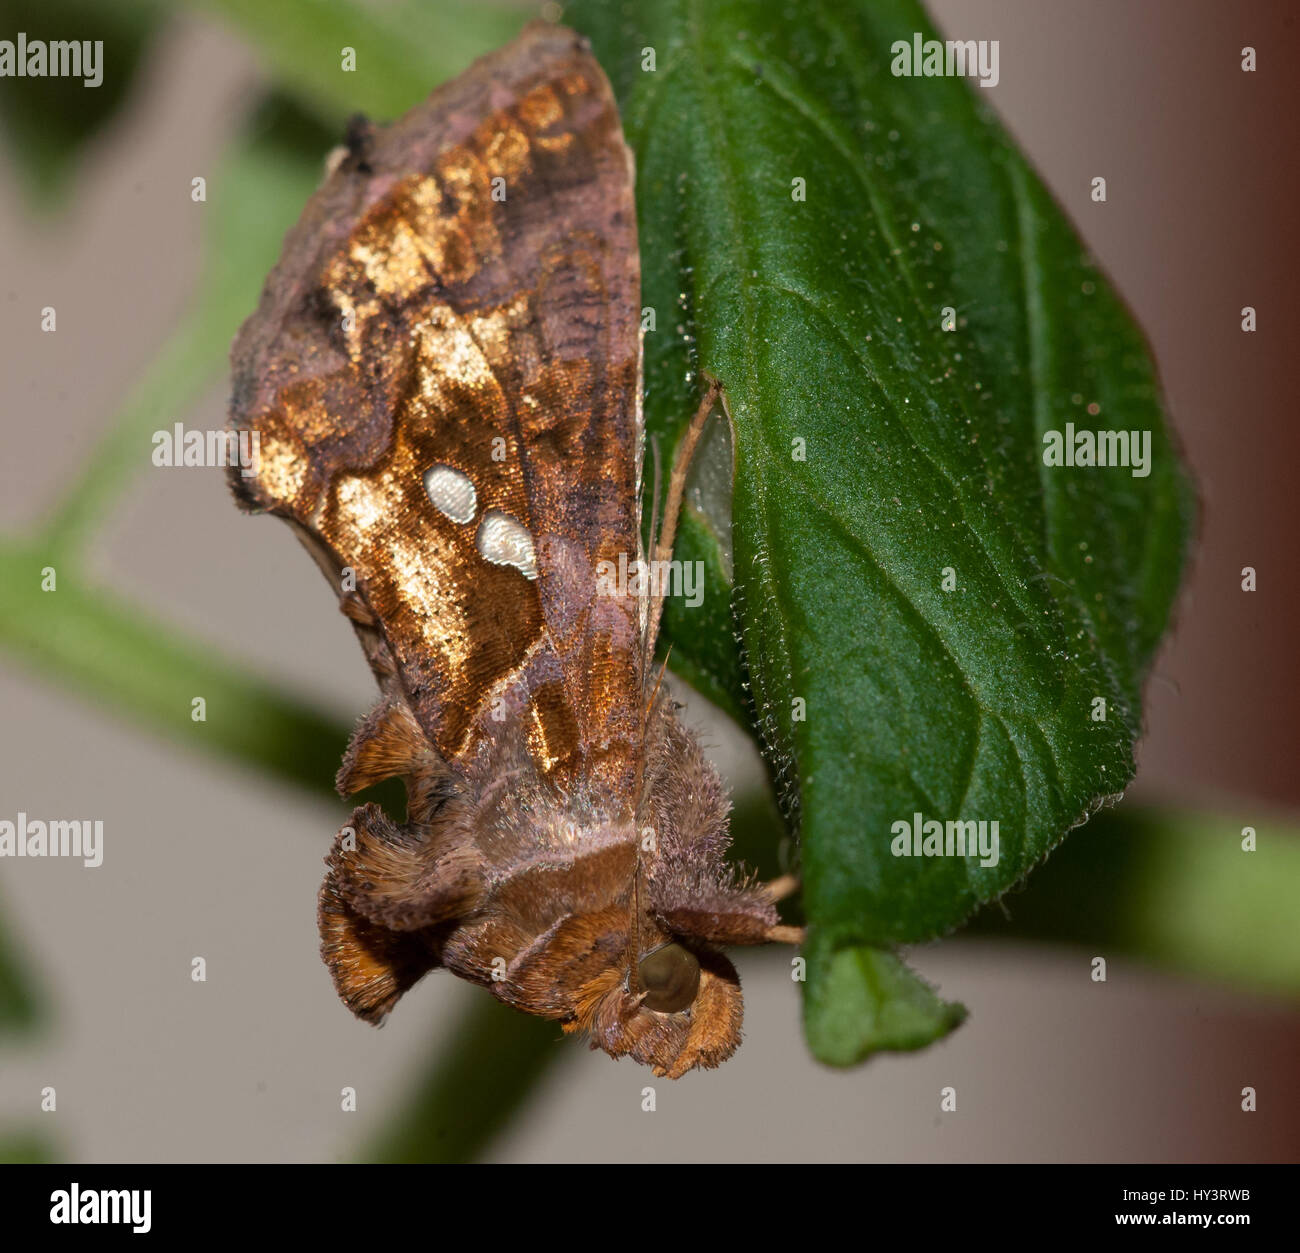 La mariposa nocturna Plusia chalcites (Chrysodeixis chalcites) se distingue por las dos manchas color plateado - blanquecino en sus alas anteriores. L Stock Photo